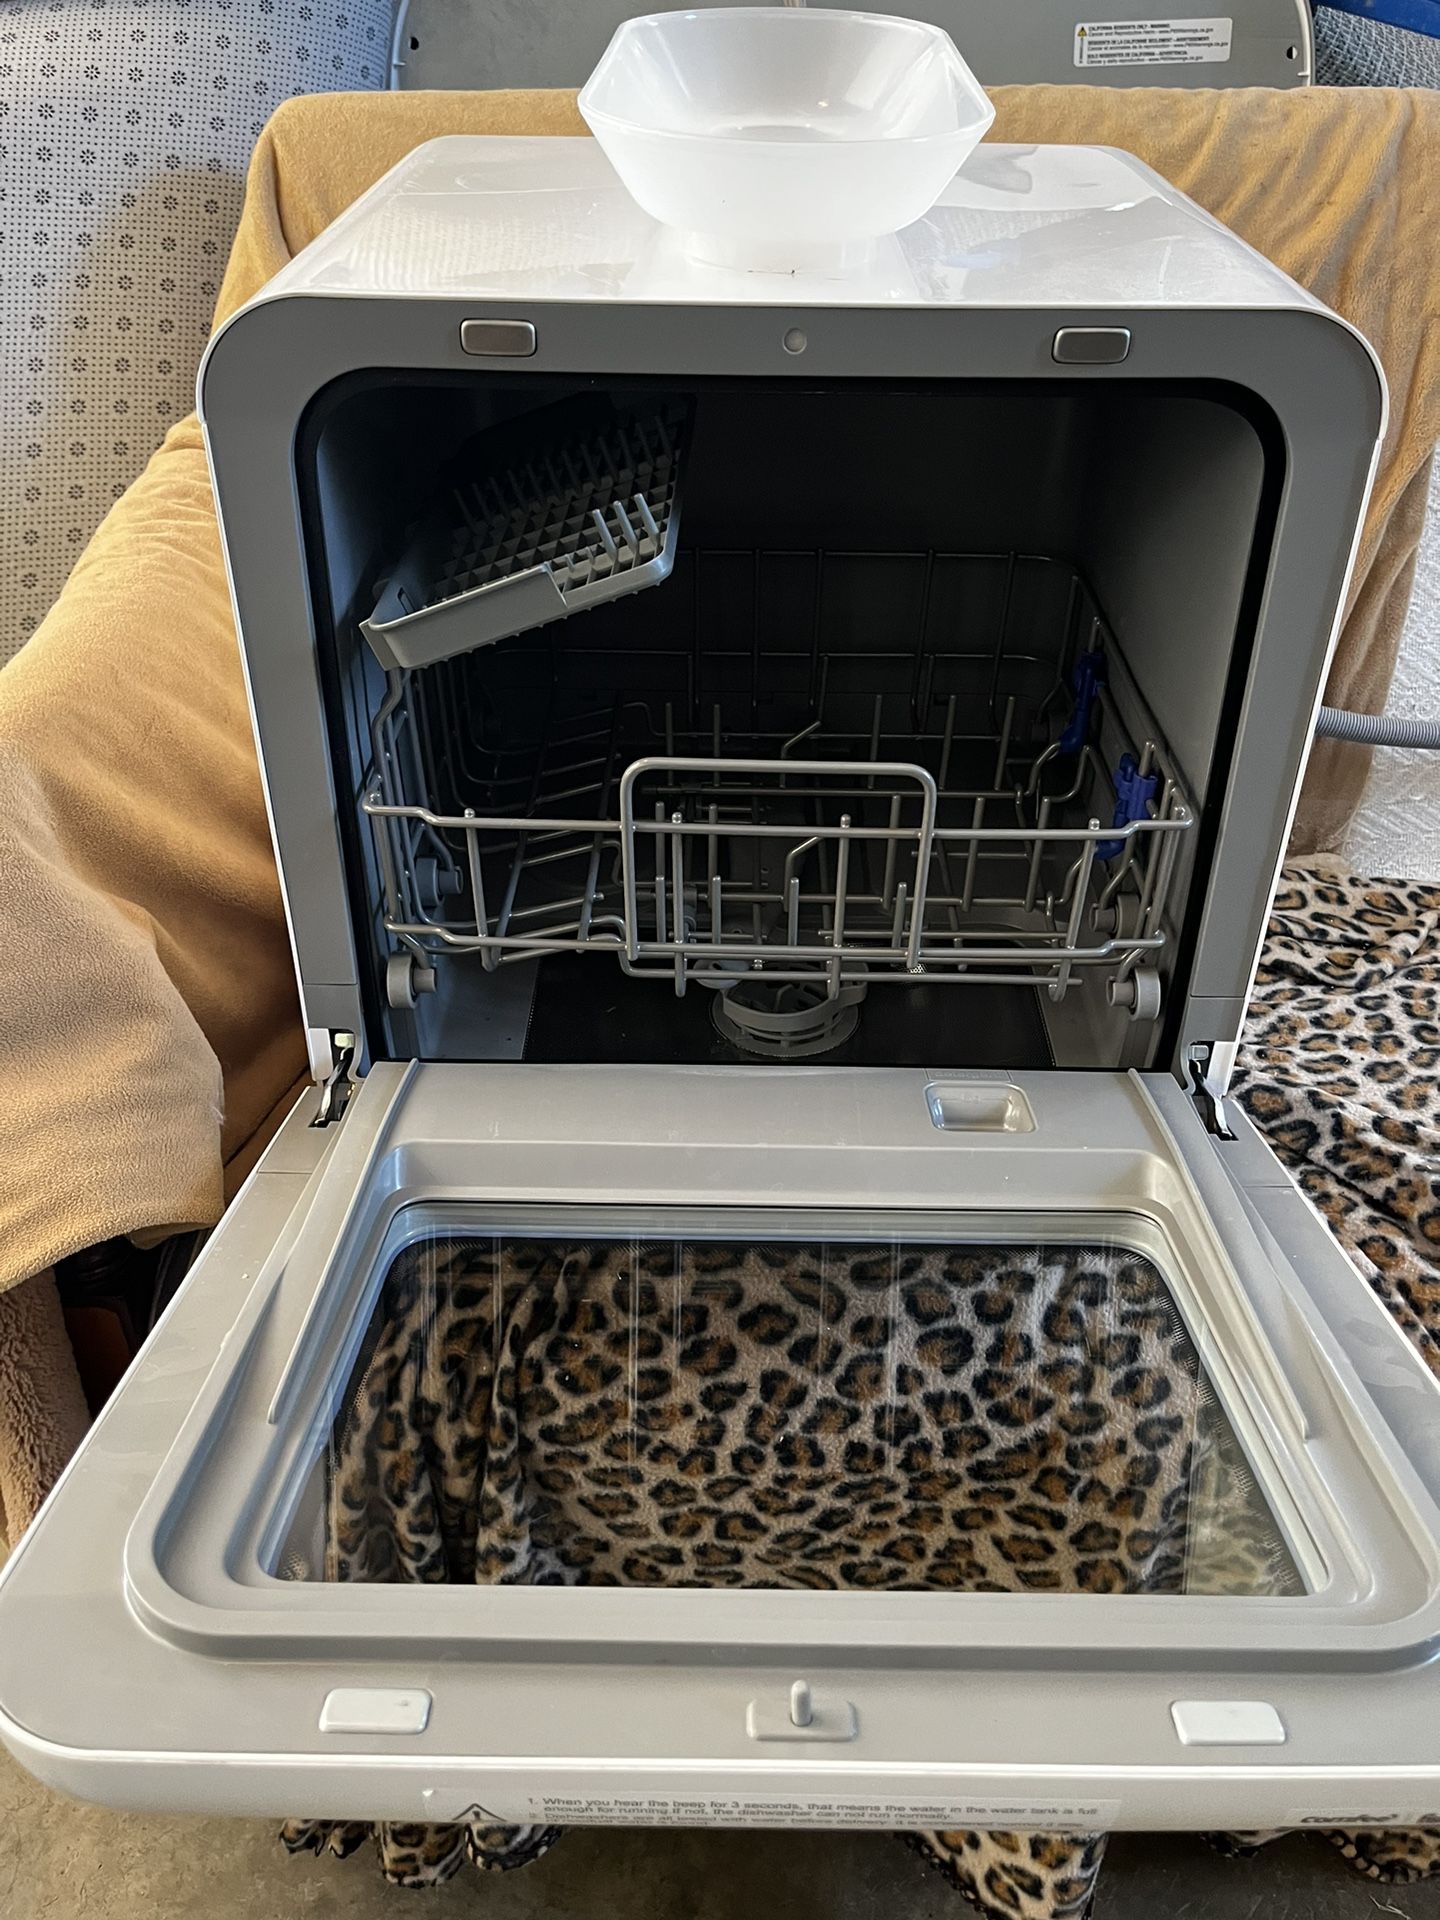 NEW Farberware Portable Countertop Dishwasher for Sale in Boca Raton, FL -  OfferUp